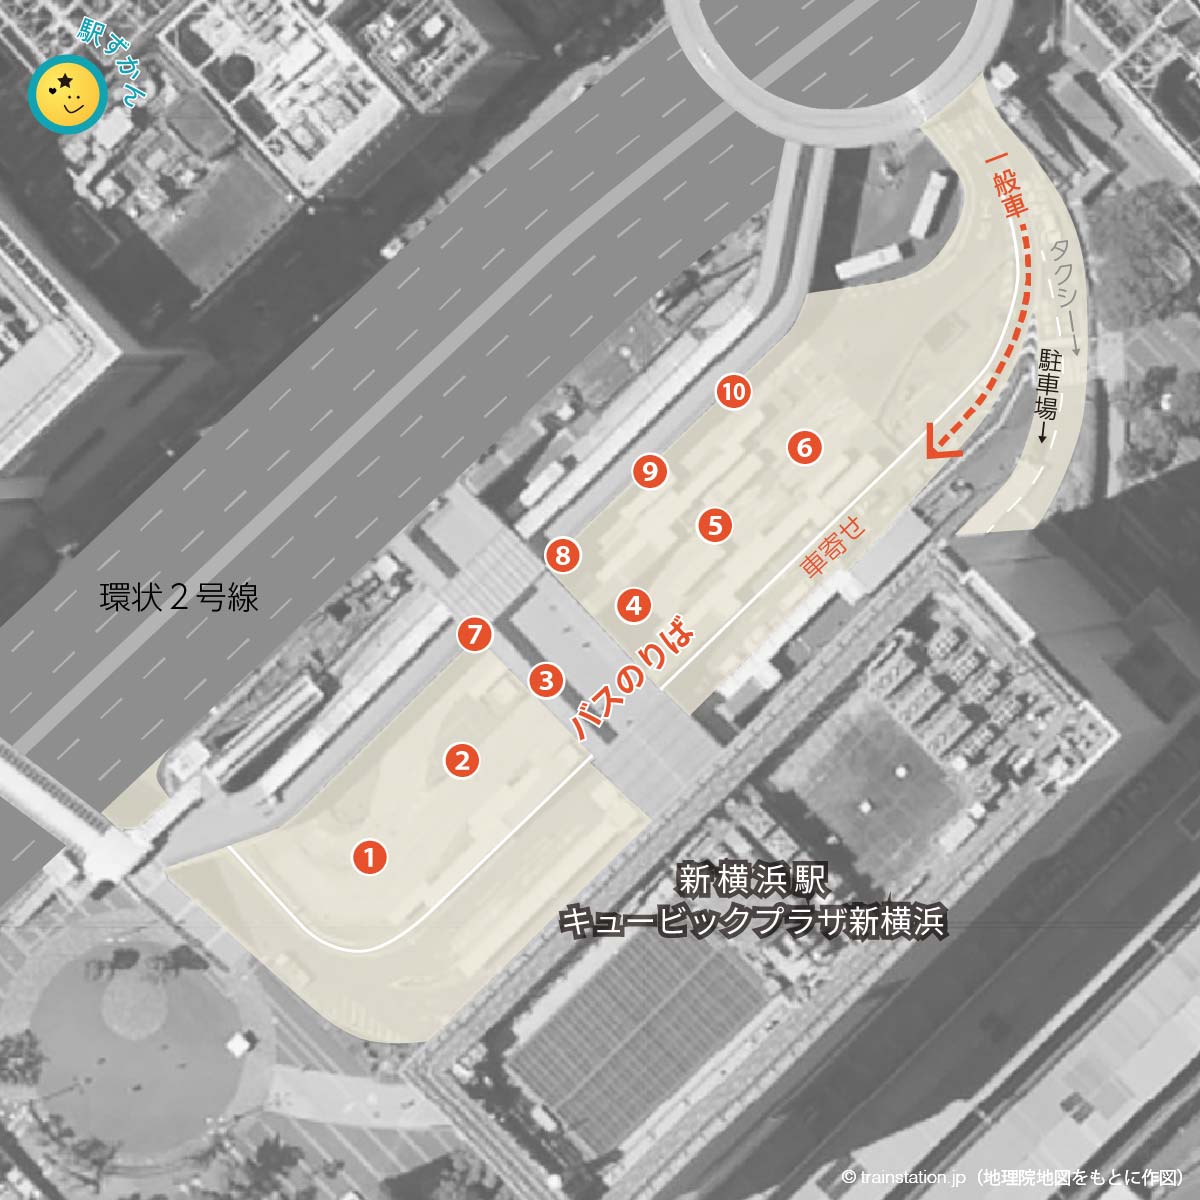 新横浜駅バスターミナル・一般車寄せマップ